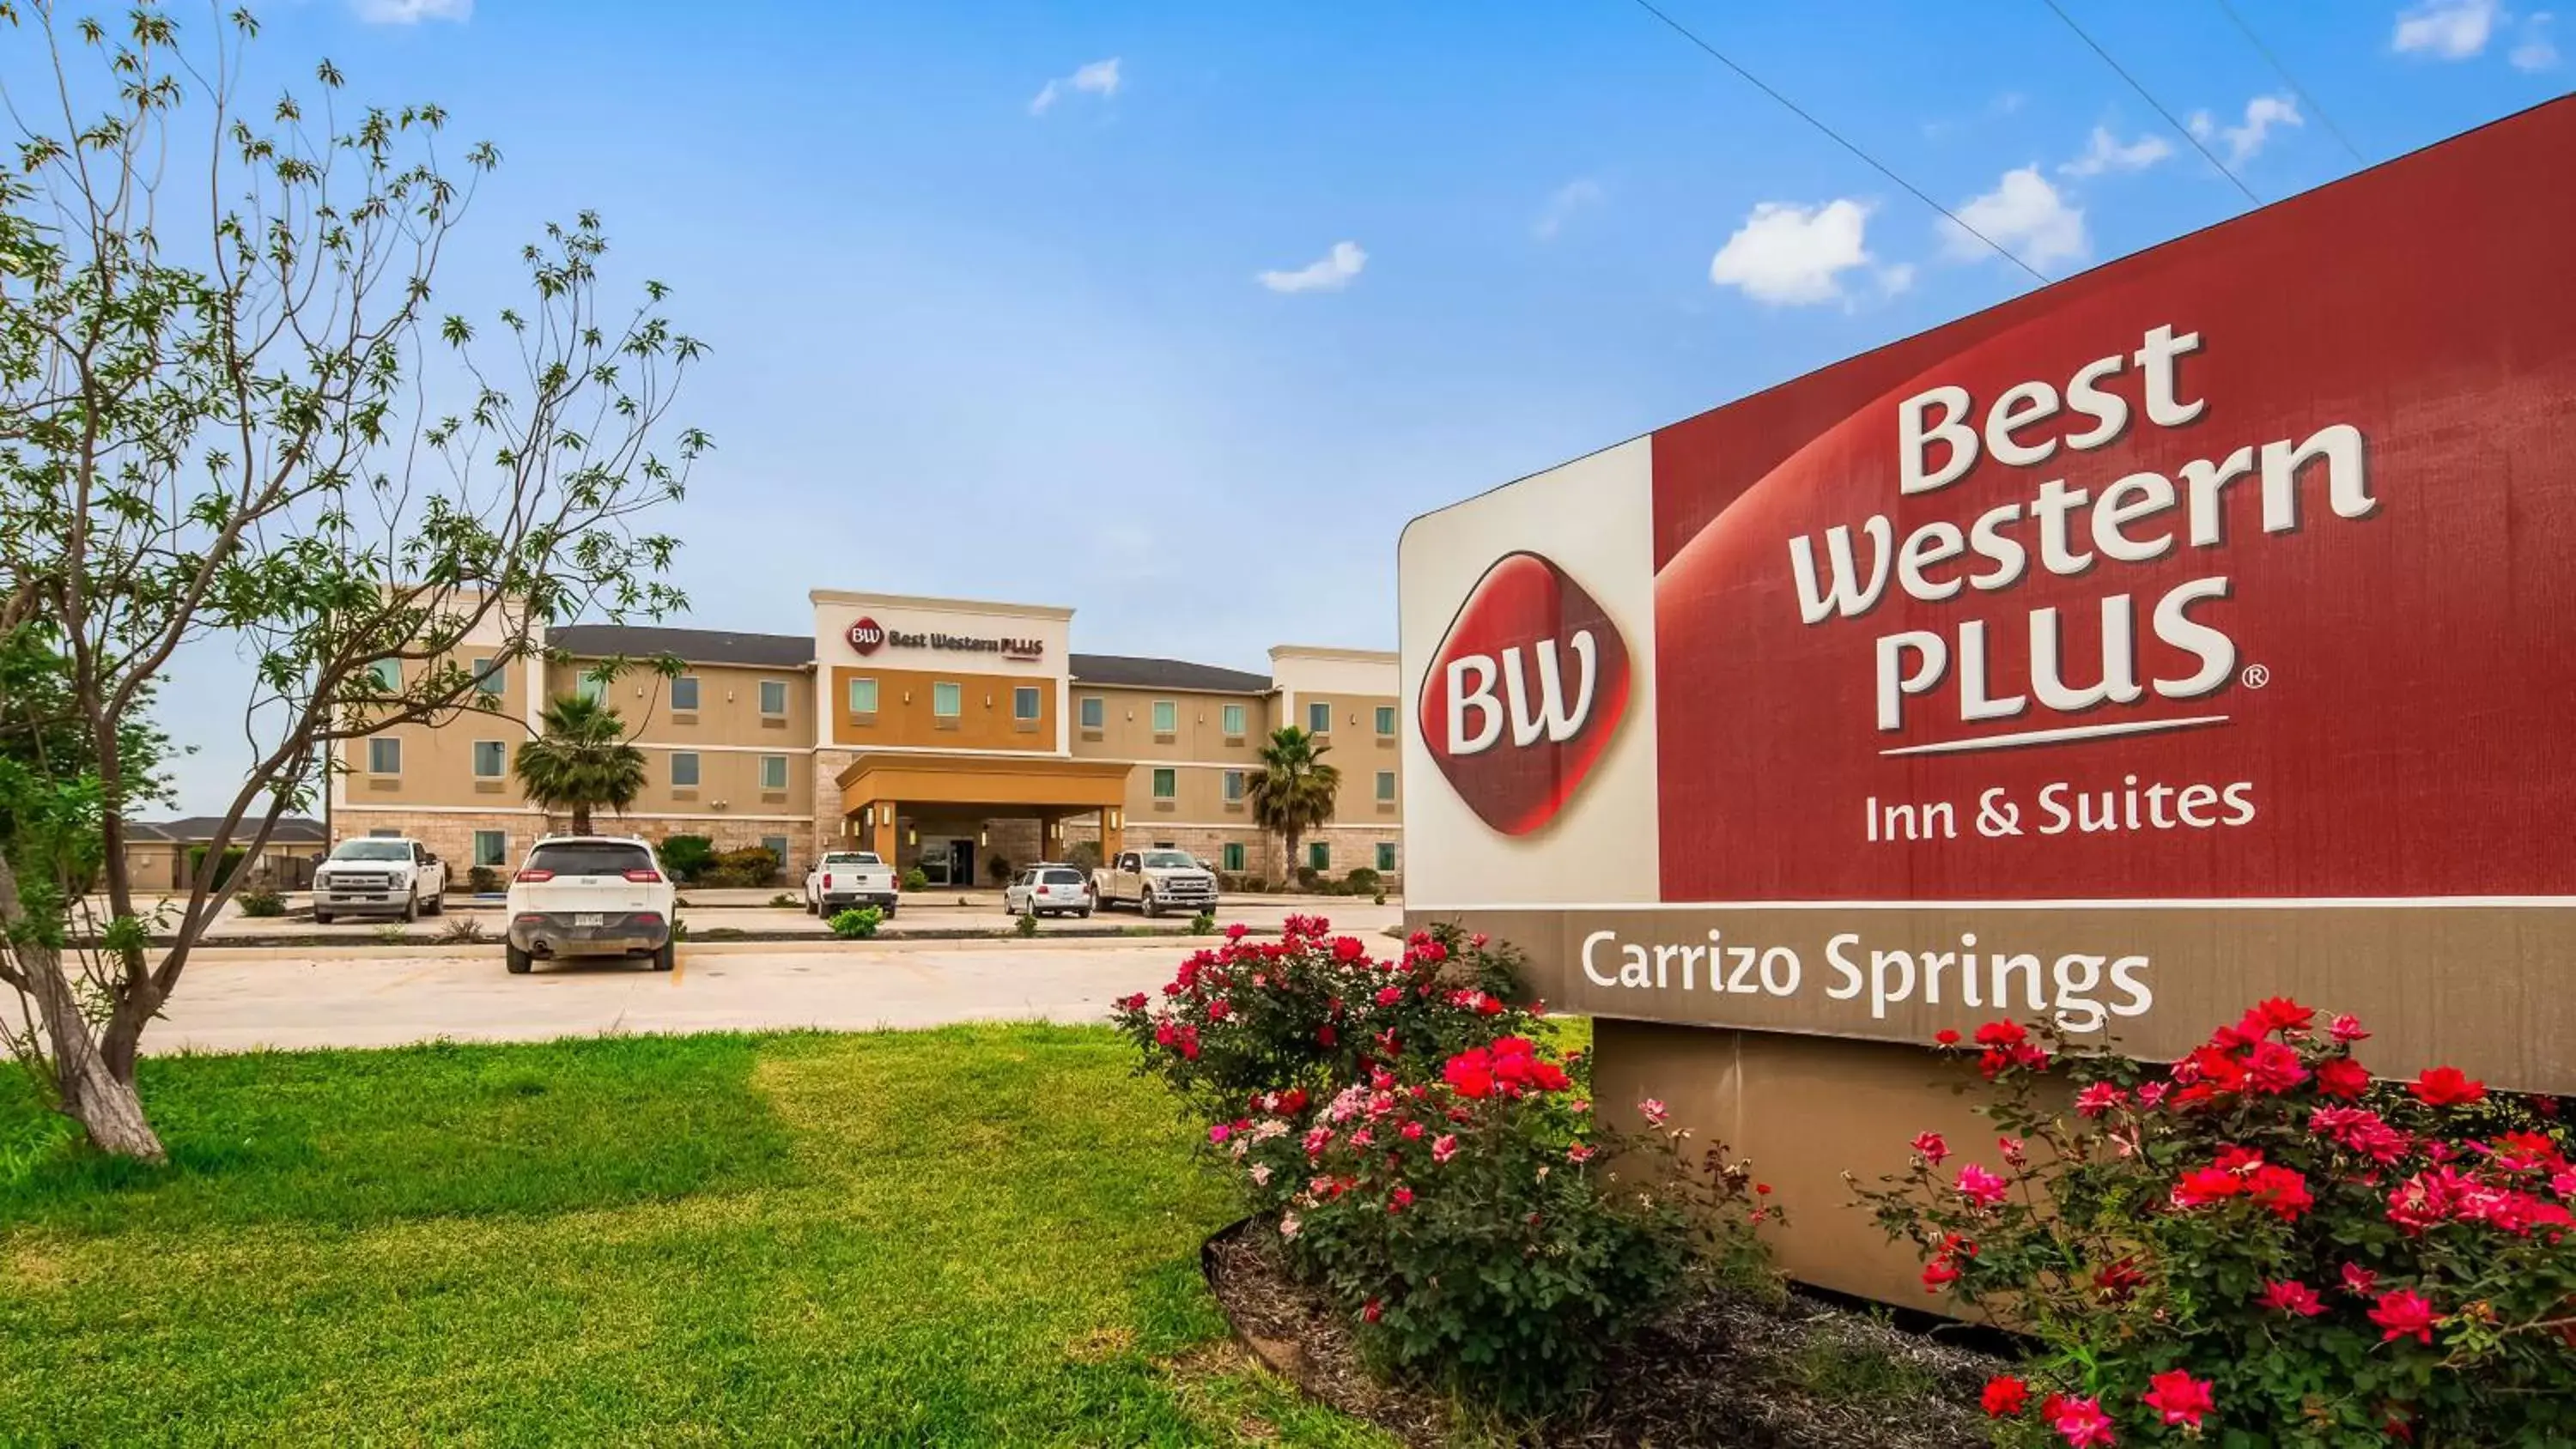 Property building in Best Western Plus Carrizo Springs Inn & Suites